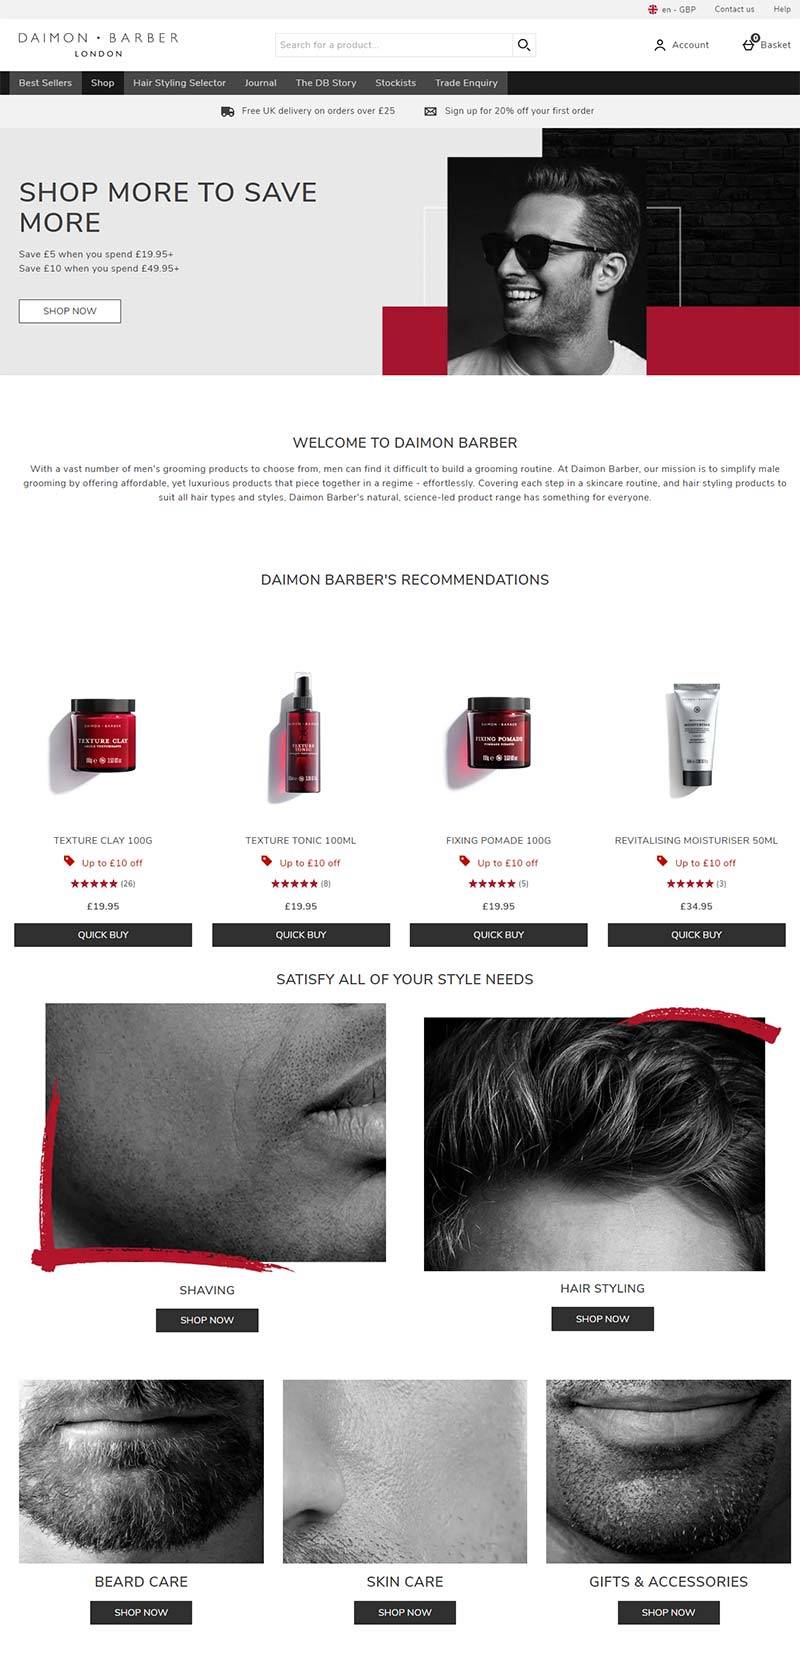 Daimon Barber 英国天然护肤品牌购物网站